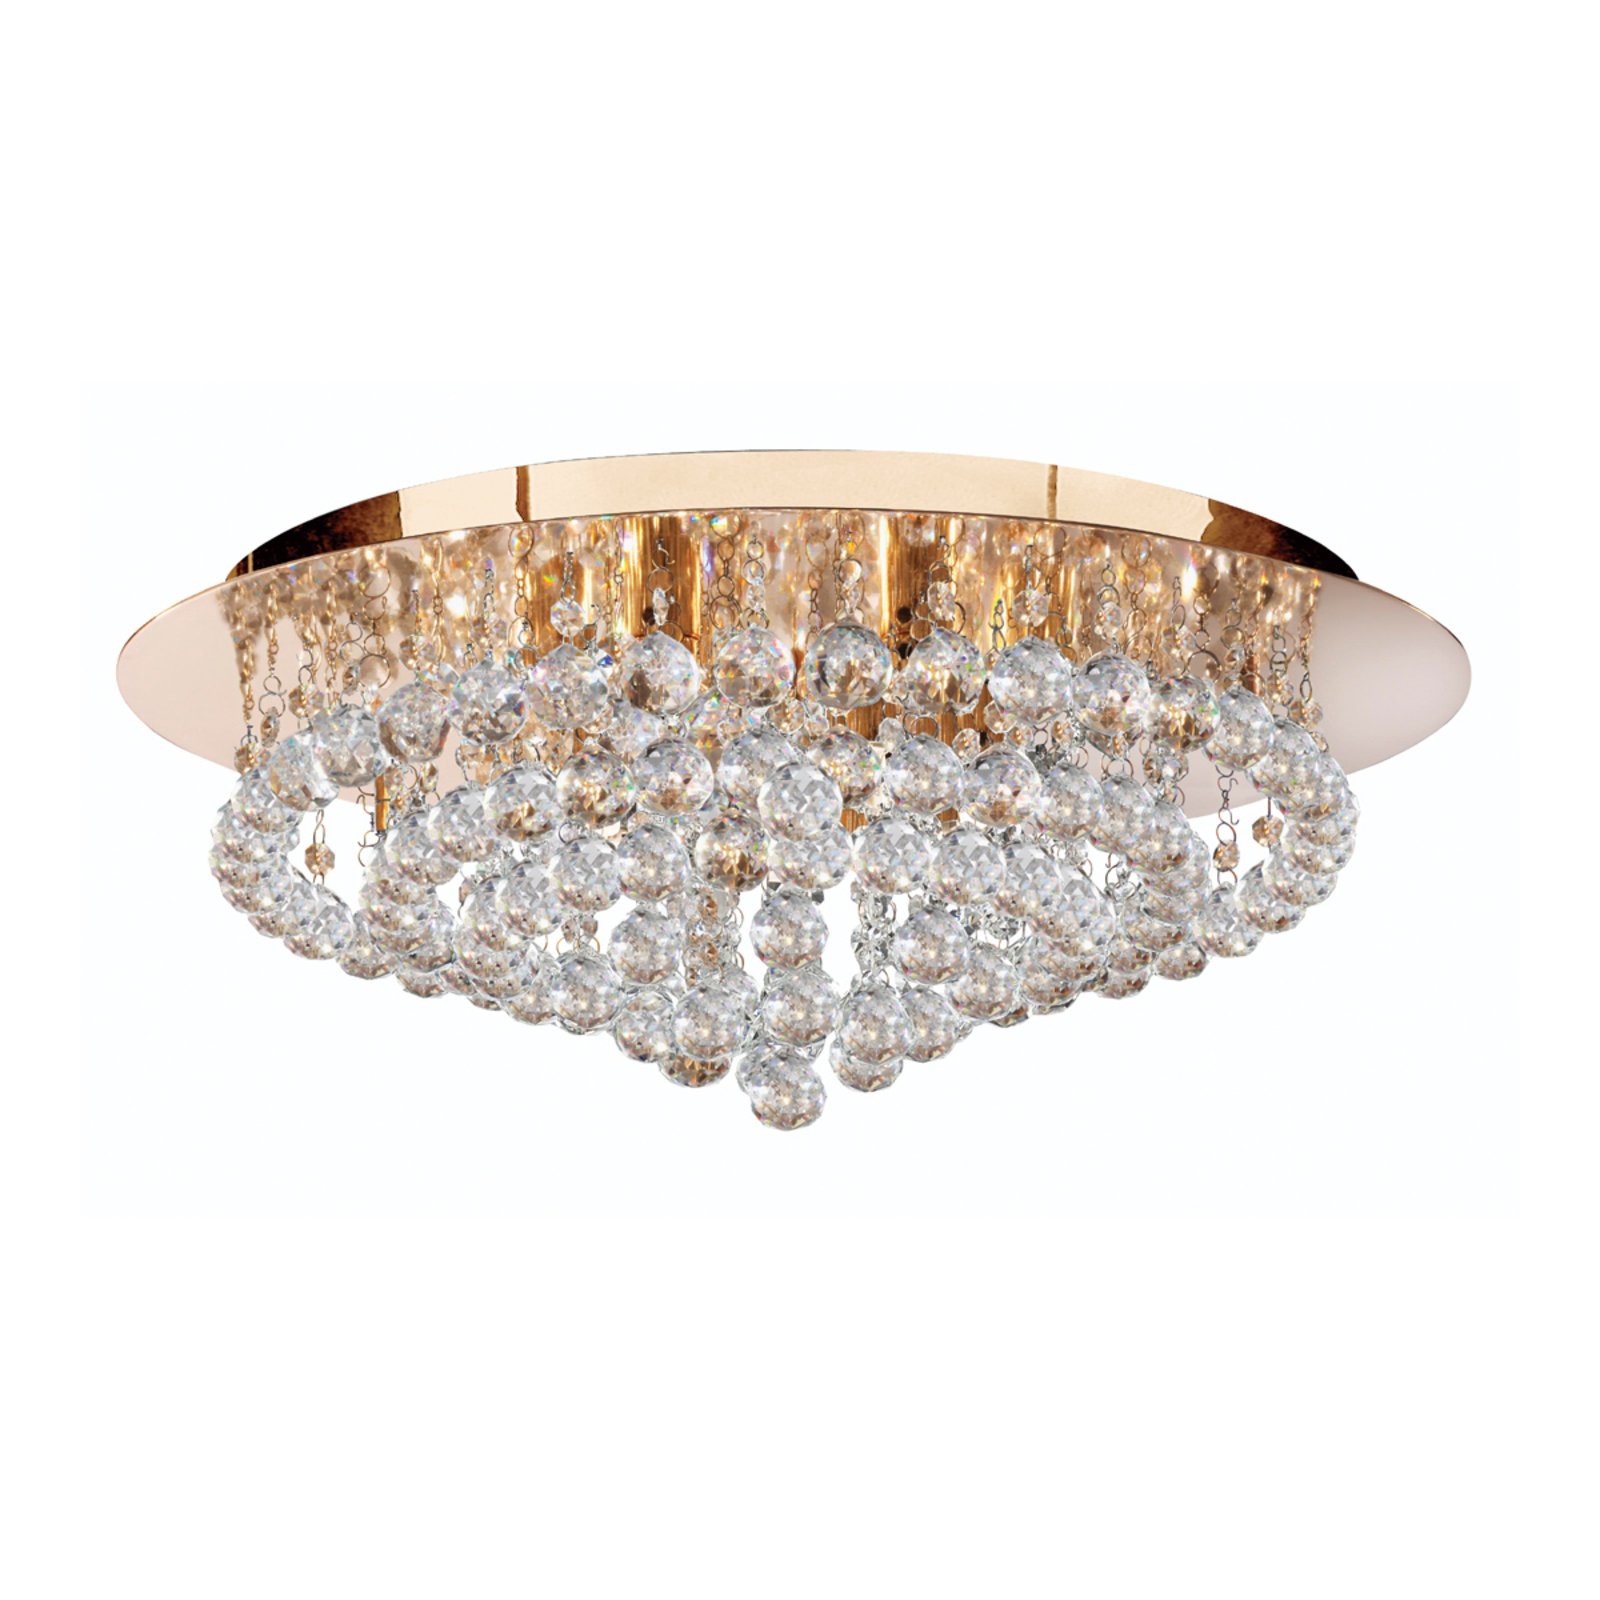 Hanna loftslampe, guld, krystalkugler, Ø 55 cm